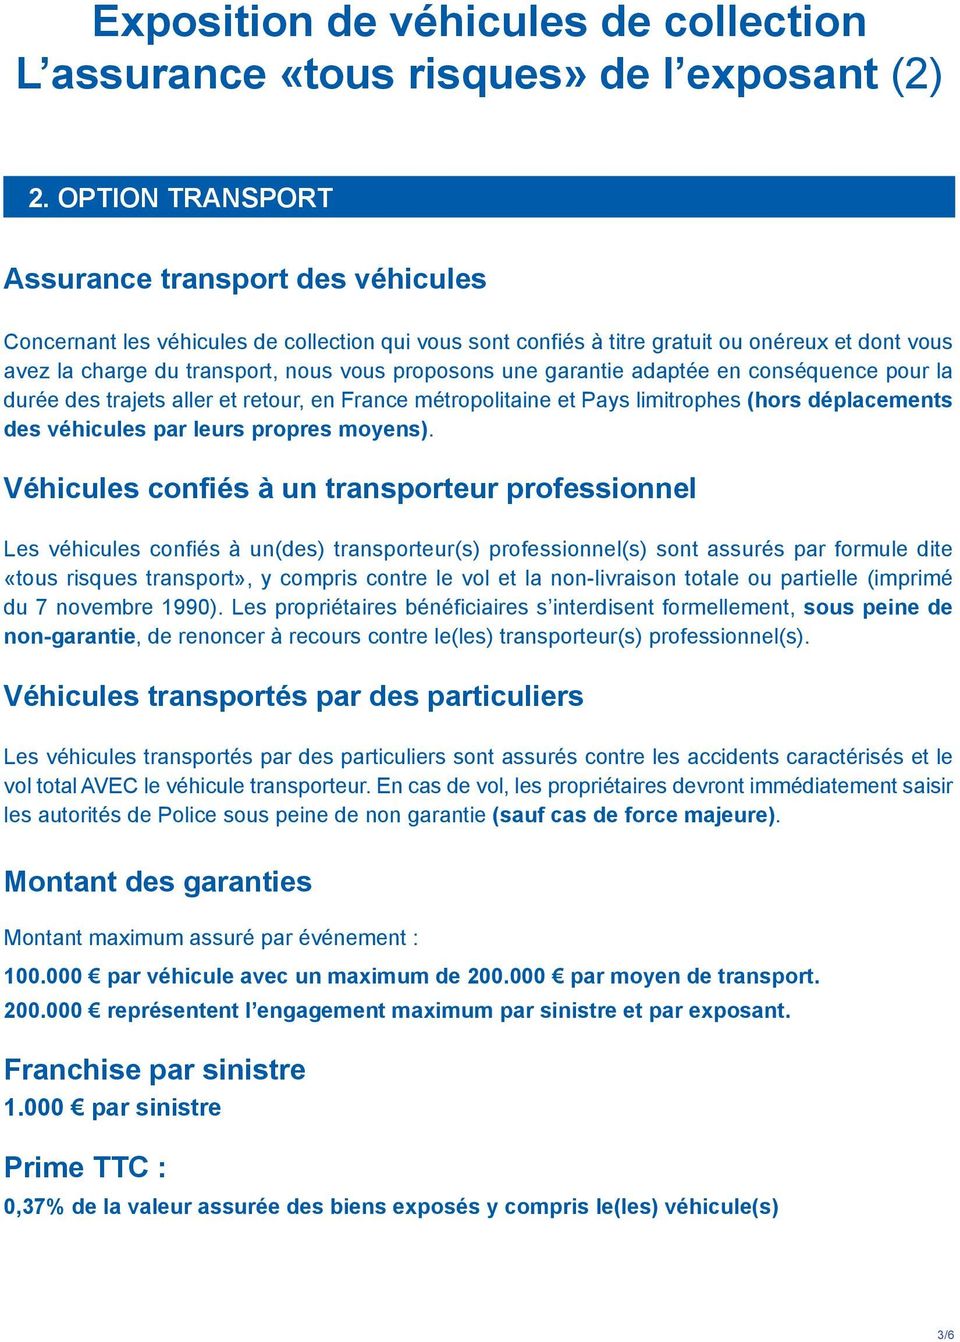 proposons une garantie adaptée en conséquence pour la durée des trajets aller et retour, en France métropolitaine et Pays limitrophes (hors déplacements des véhicules par leurs propres moyens).